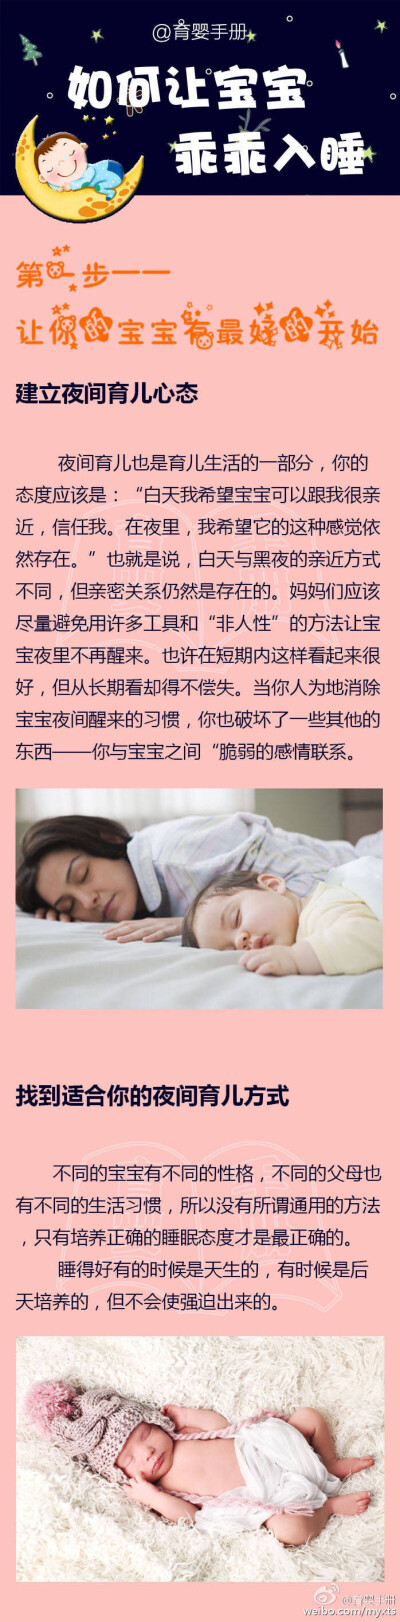 如何让宝宝睡得更好